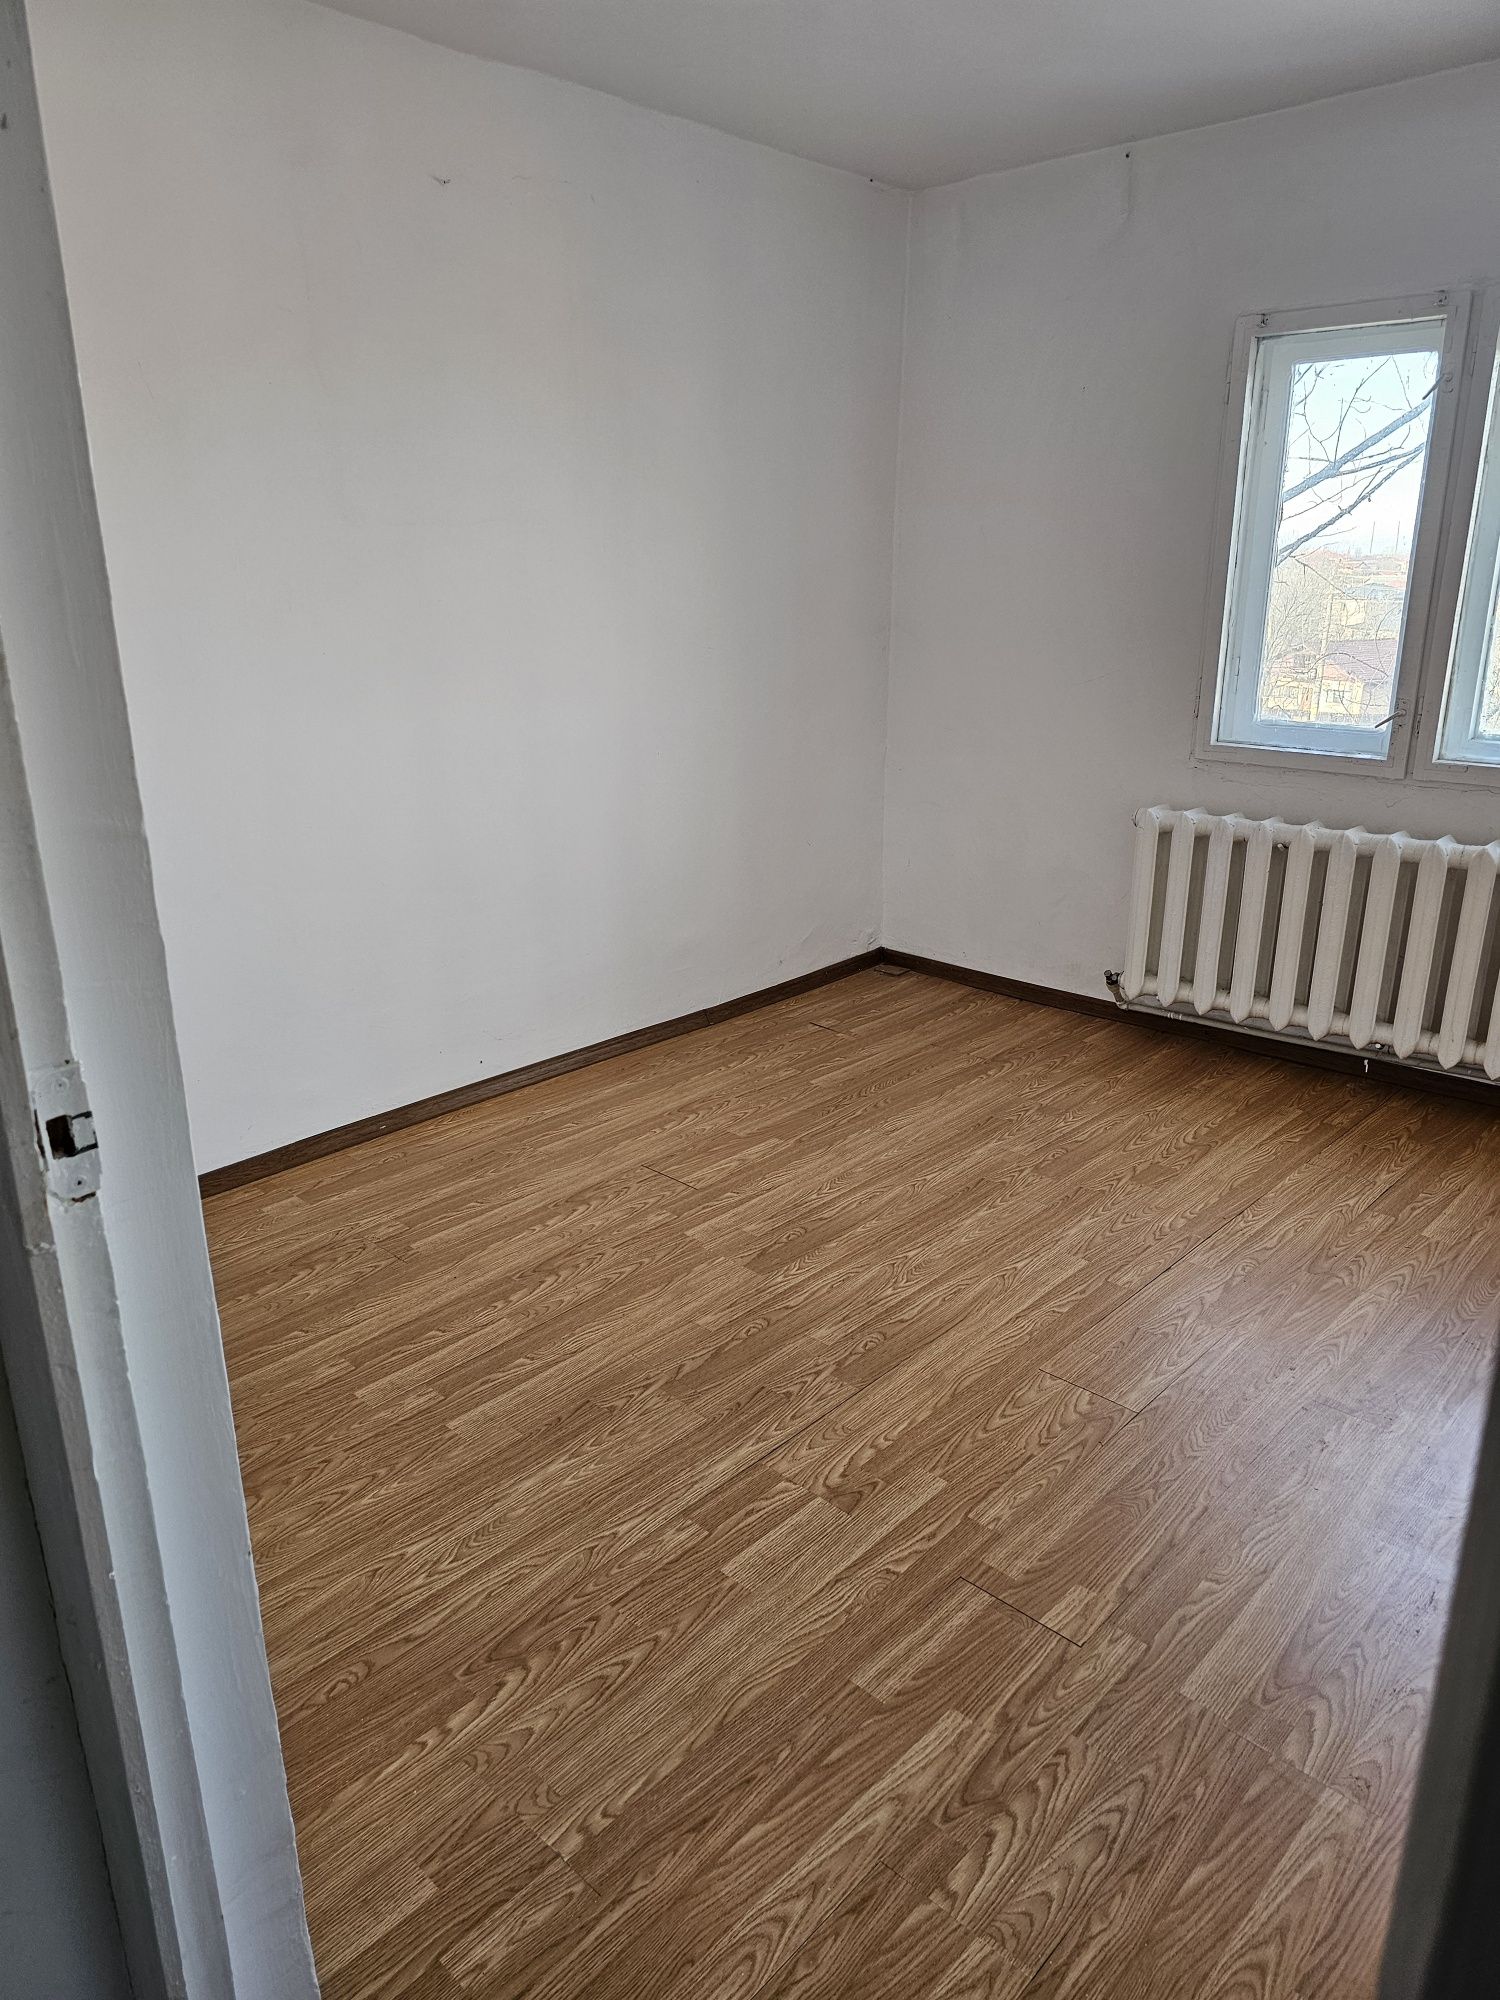 Proprietar Vand Apartament 3 camere decomandat Slobozia